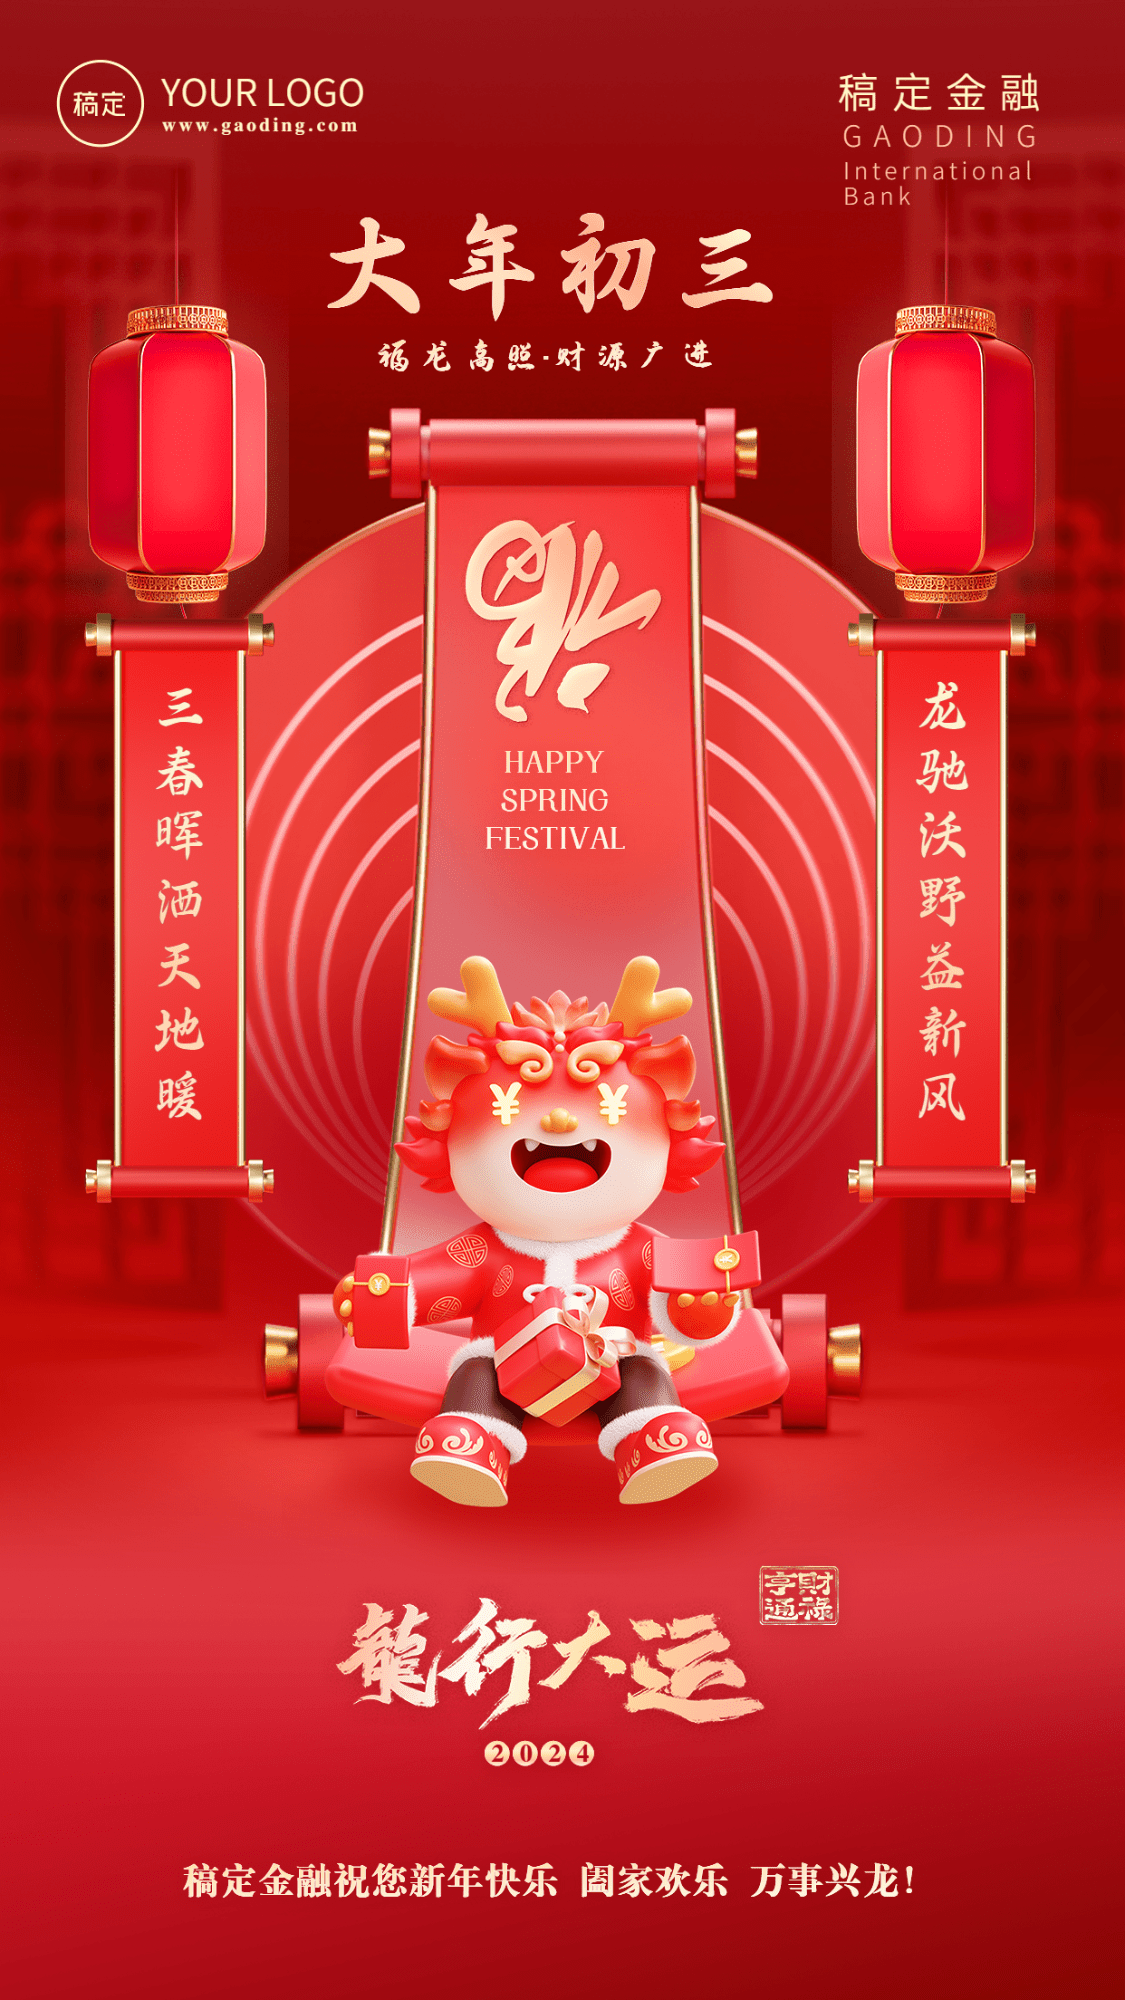 春节龙年正月初三金融保险节日祝福喜庆3D系列手机海报预览效果